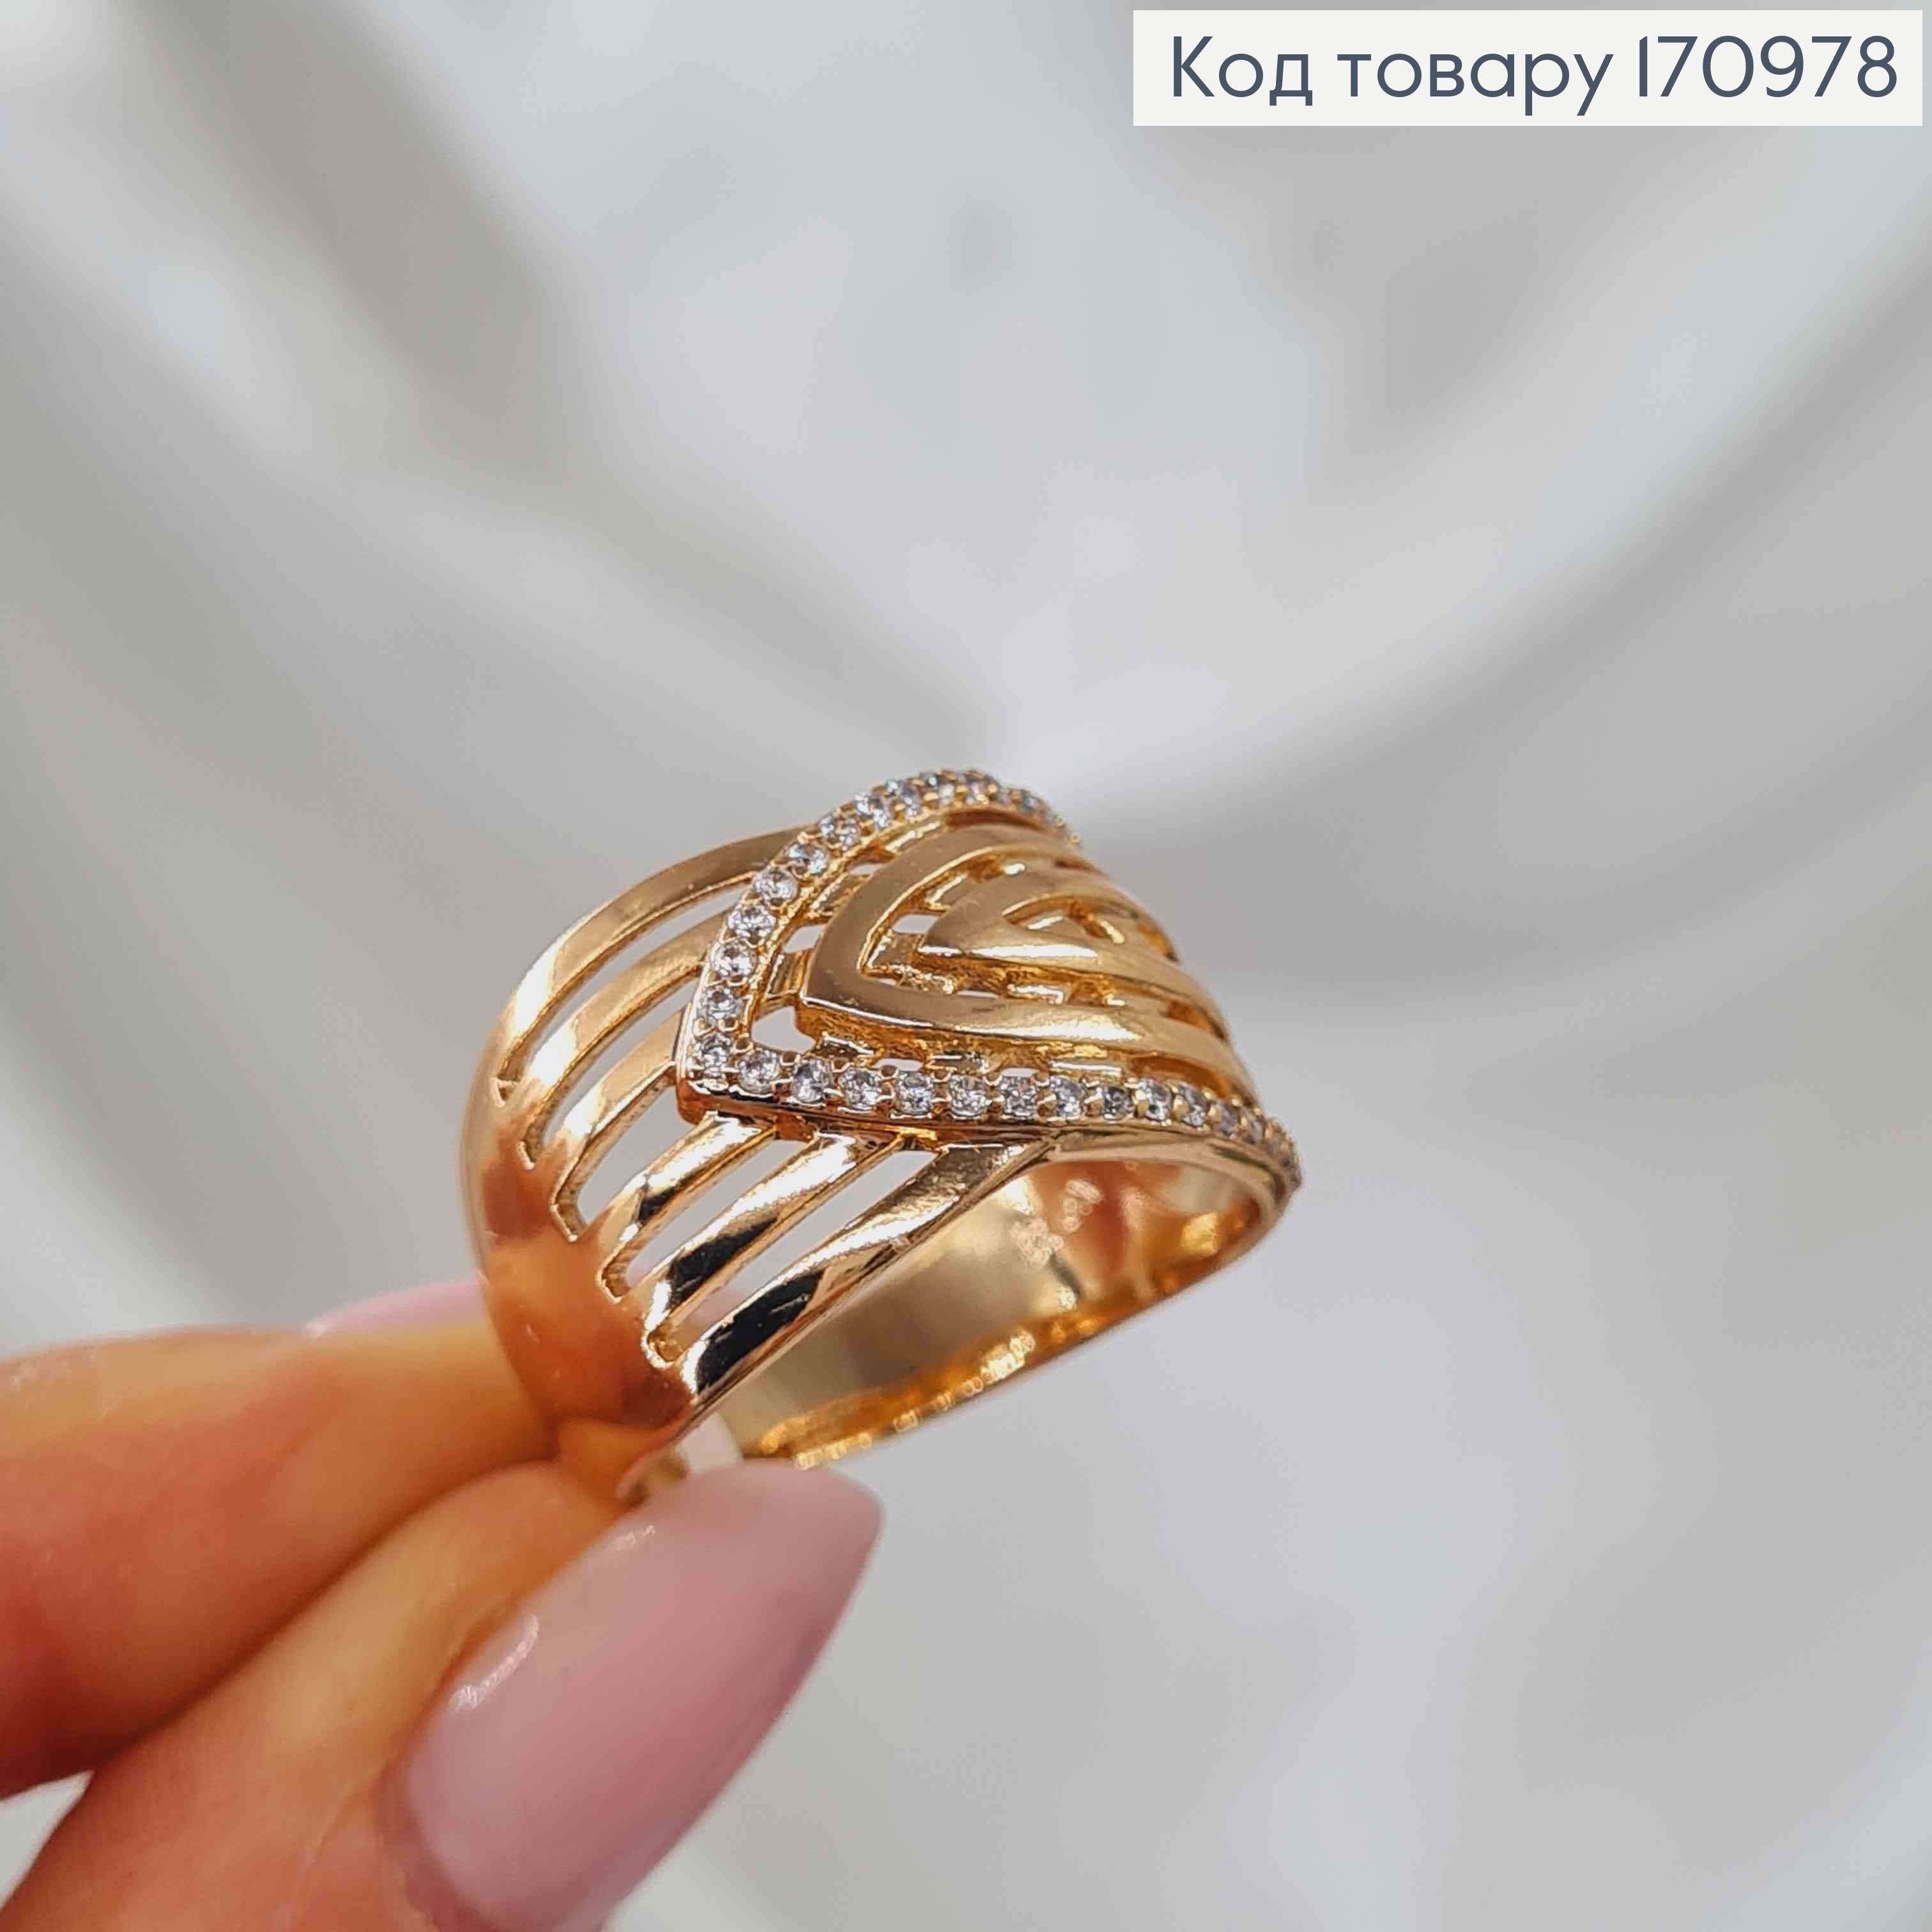 Кольцо широкое, со стрелочкой в камнях, с сечениями, Xuping 18K 170978 фото 3